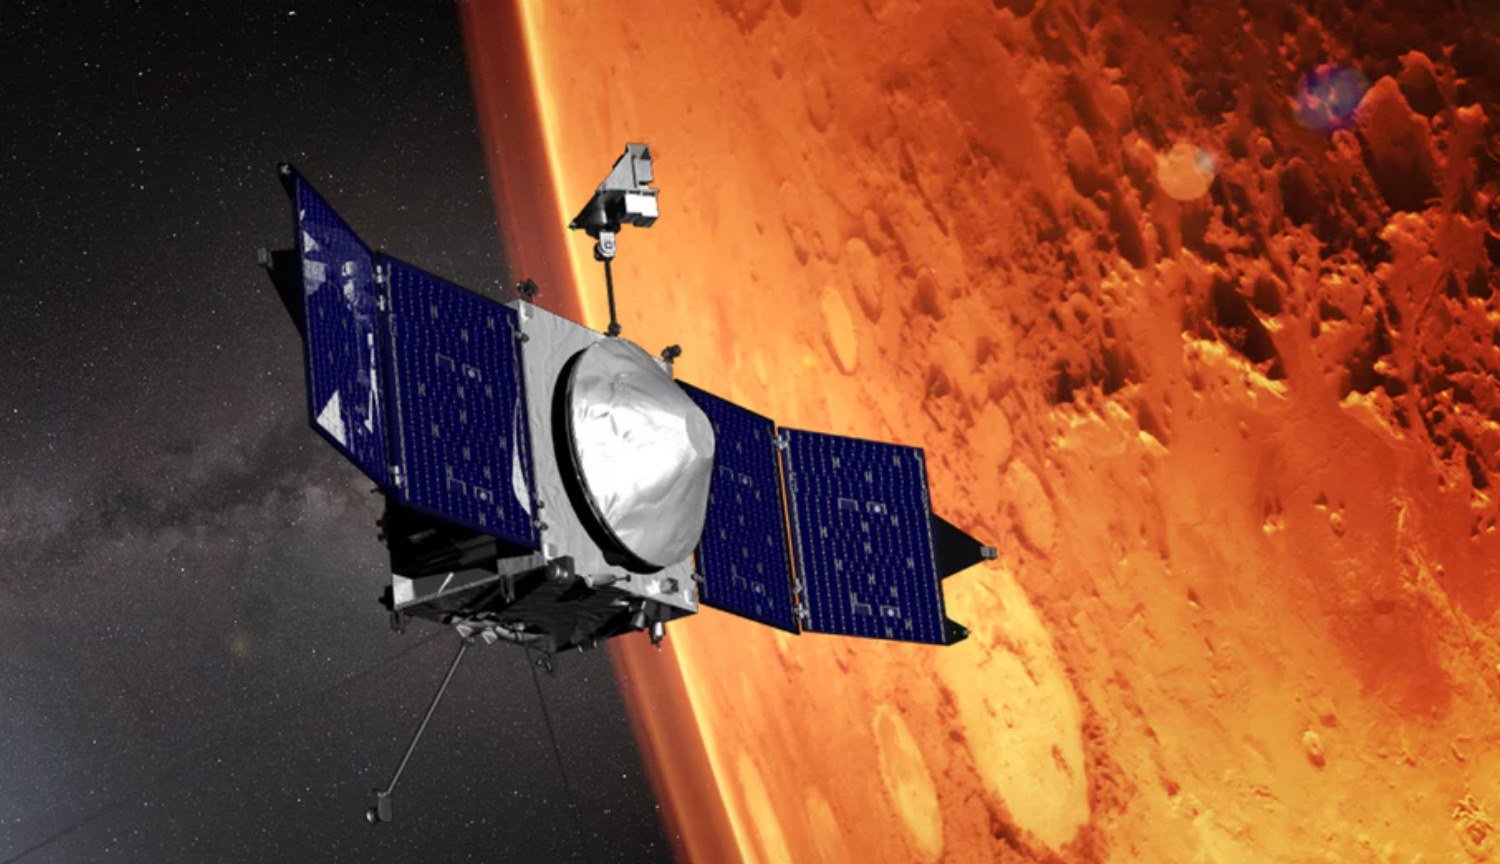 Hva vil de Mars satellitt-MAVEN i 2020?